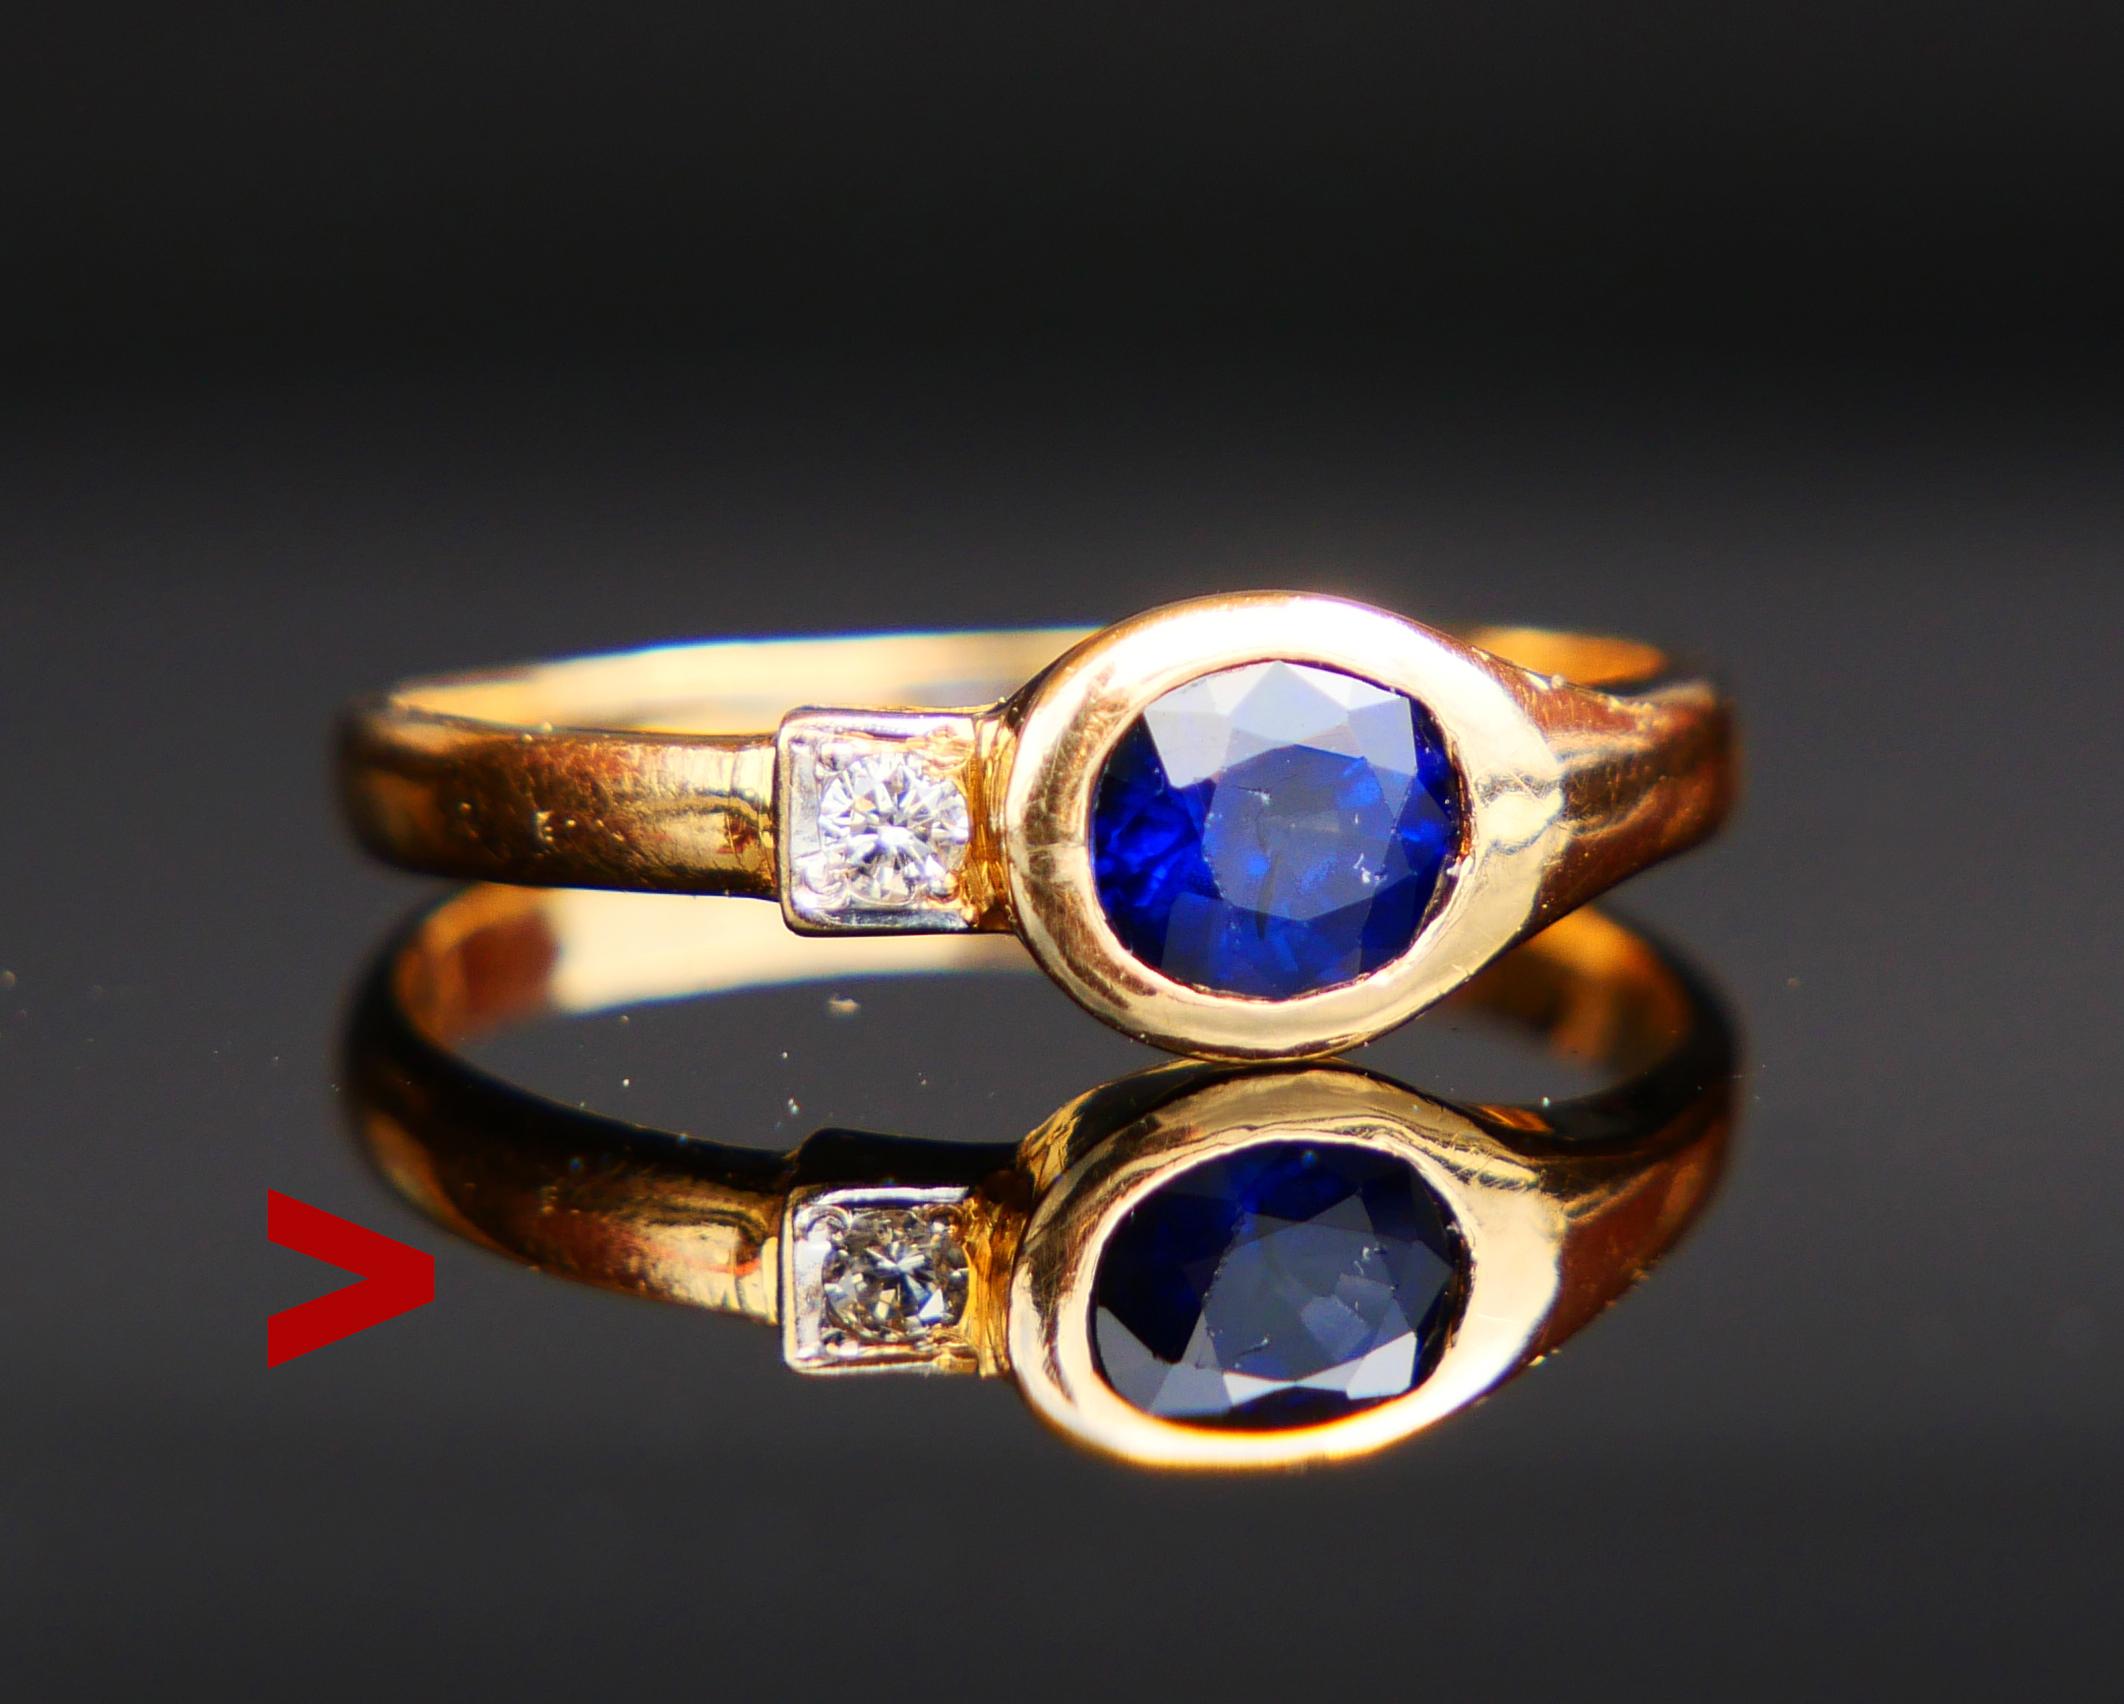 Wunderschöner Zwei - Steine Ring mit eingefasstem natürlichem Blauen Saphir im Ovalschliff 5,5 mm x 4,5 mm x 3,2 mm tief / ca. 0,6 ct. und quadratisch eingefasstem alten Diamanten im Pavee-Schliff natürlichem Diamant Ø 2mm / 0,04ct / H,I / VS.